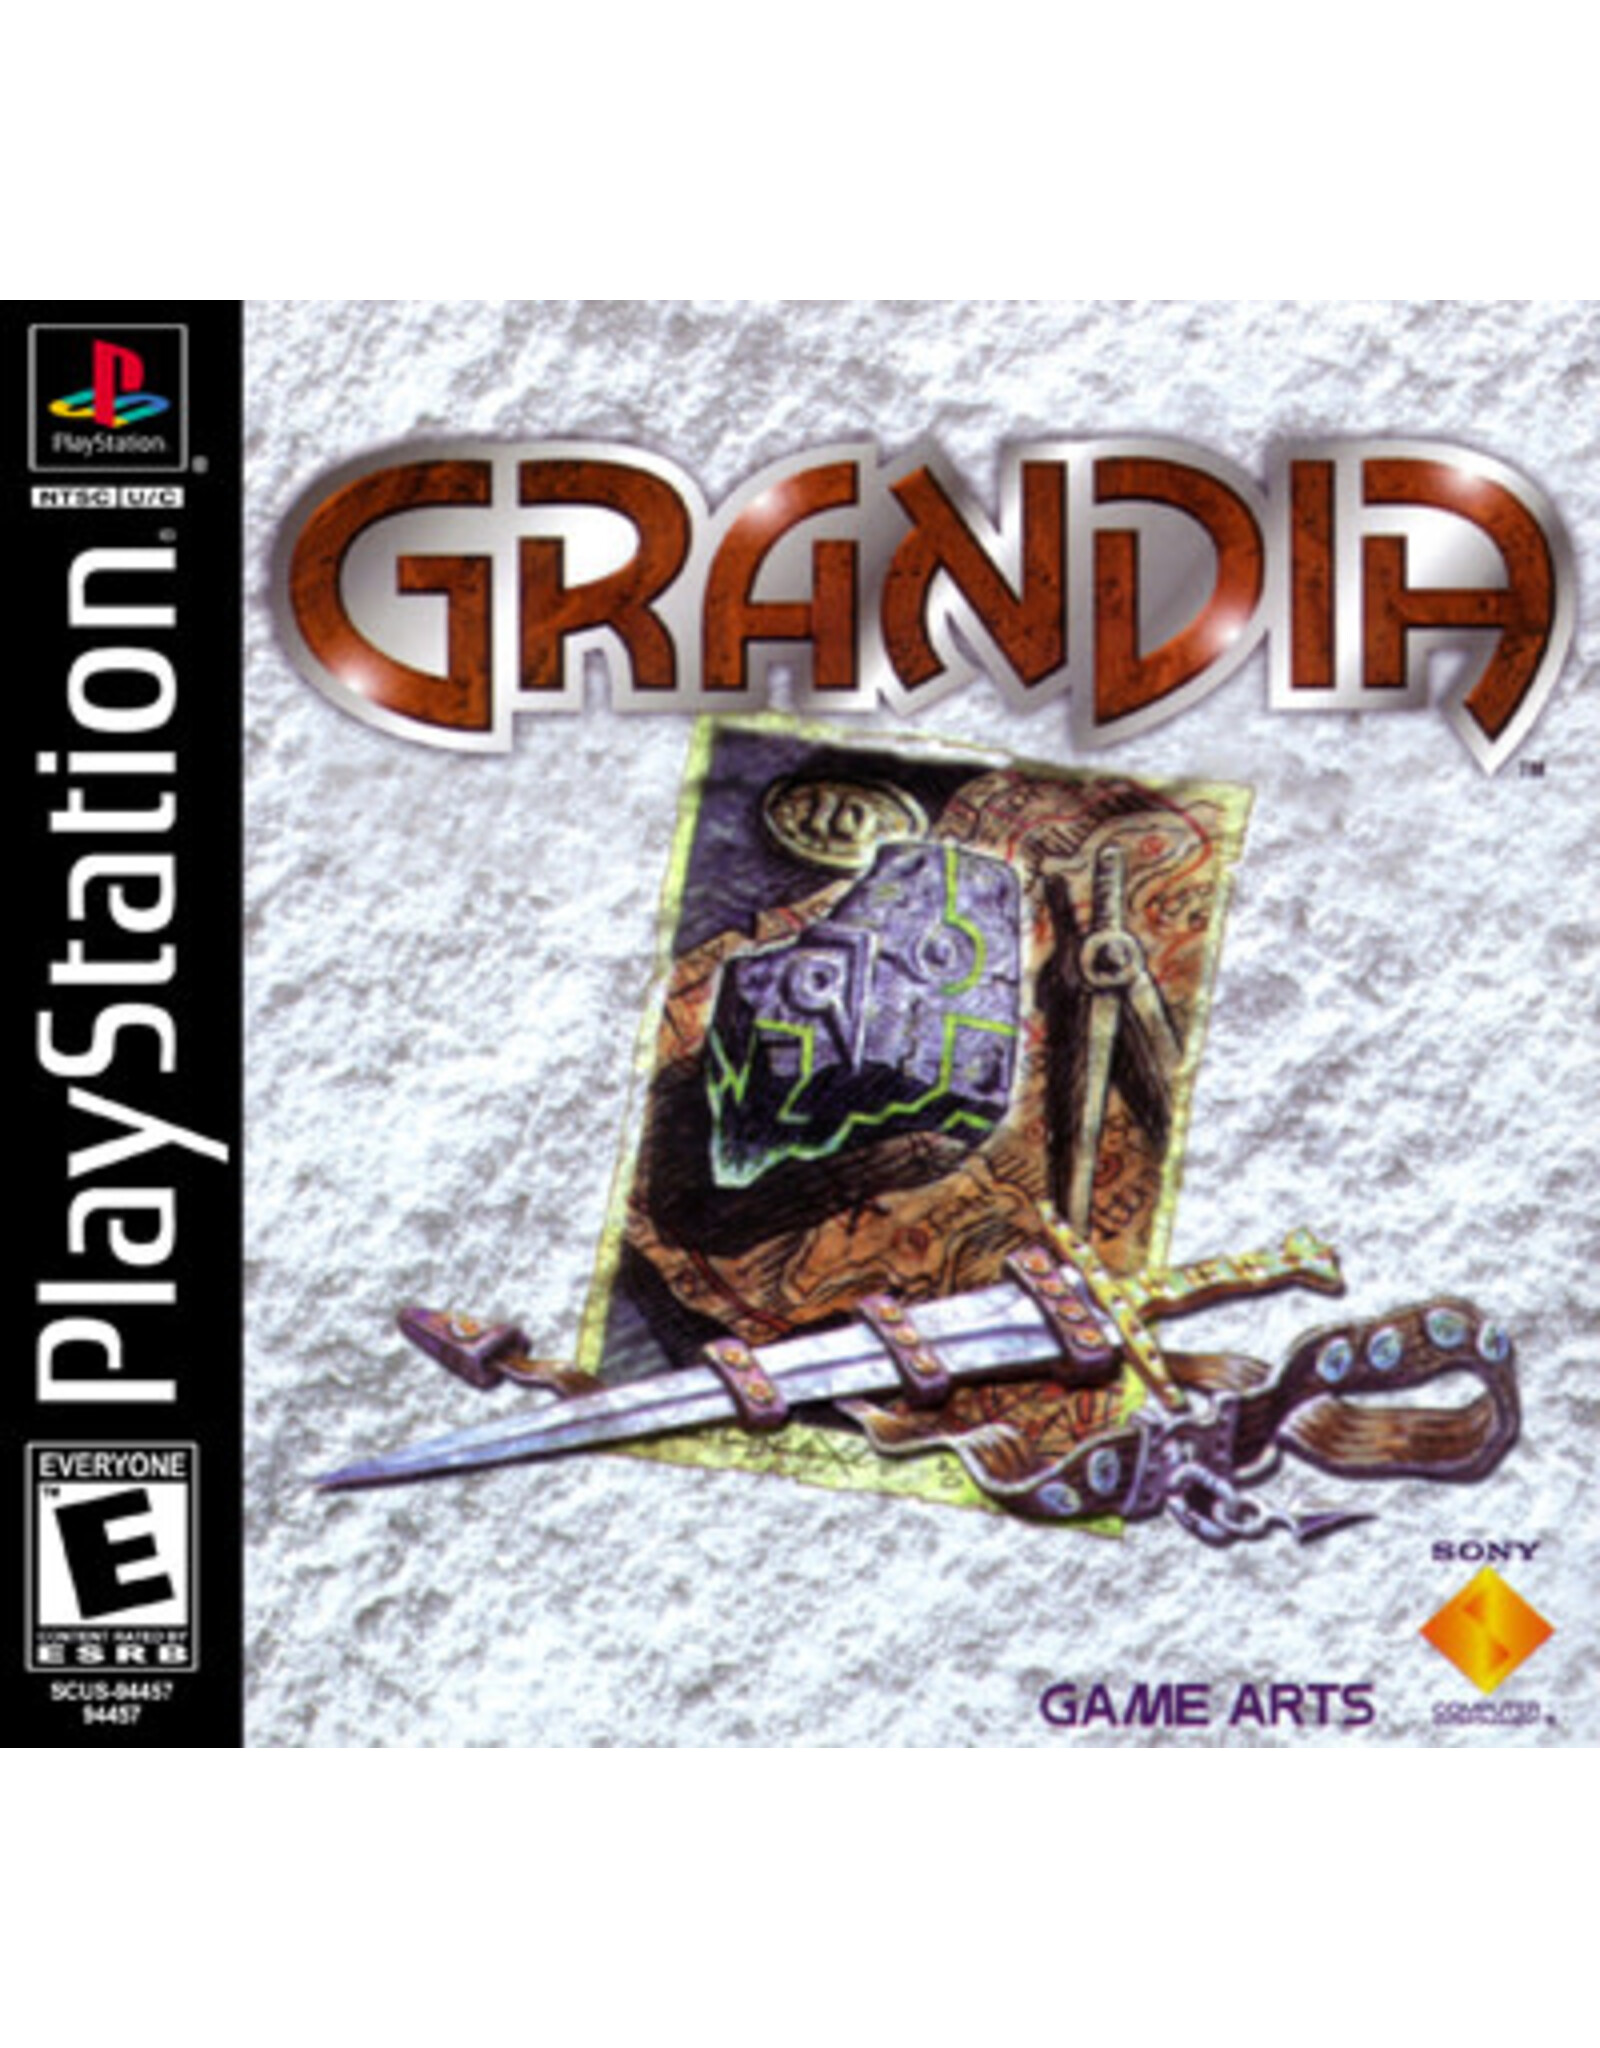 Playstation Grandia (No Manual)